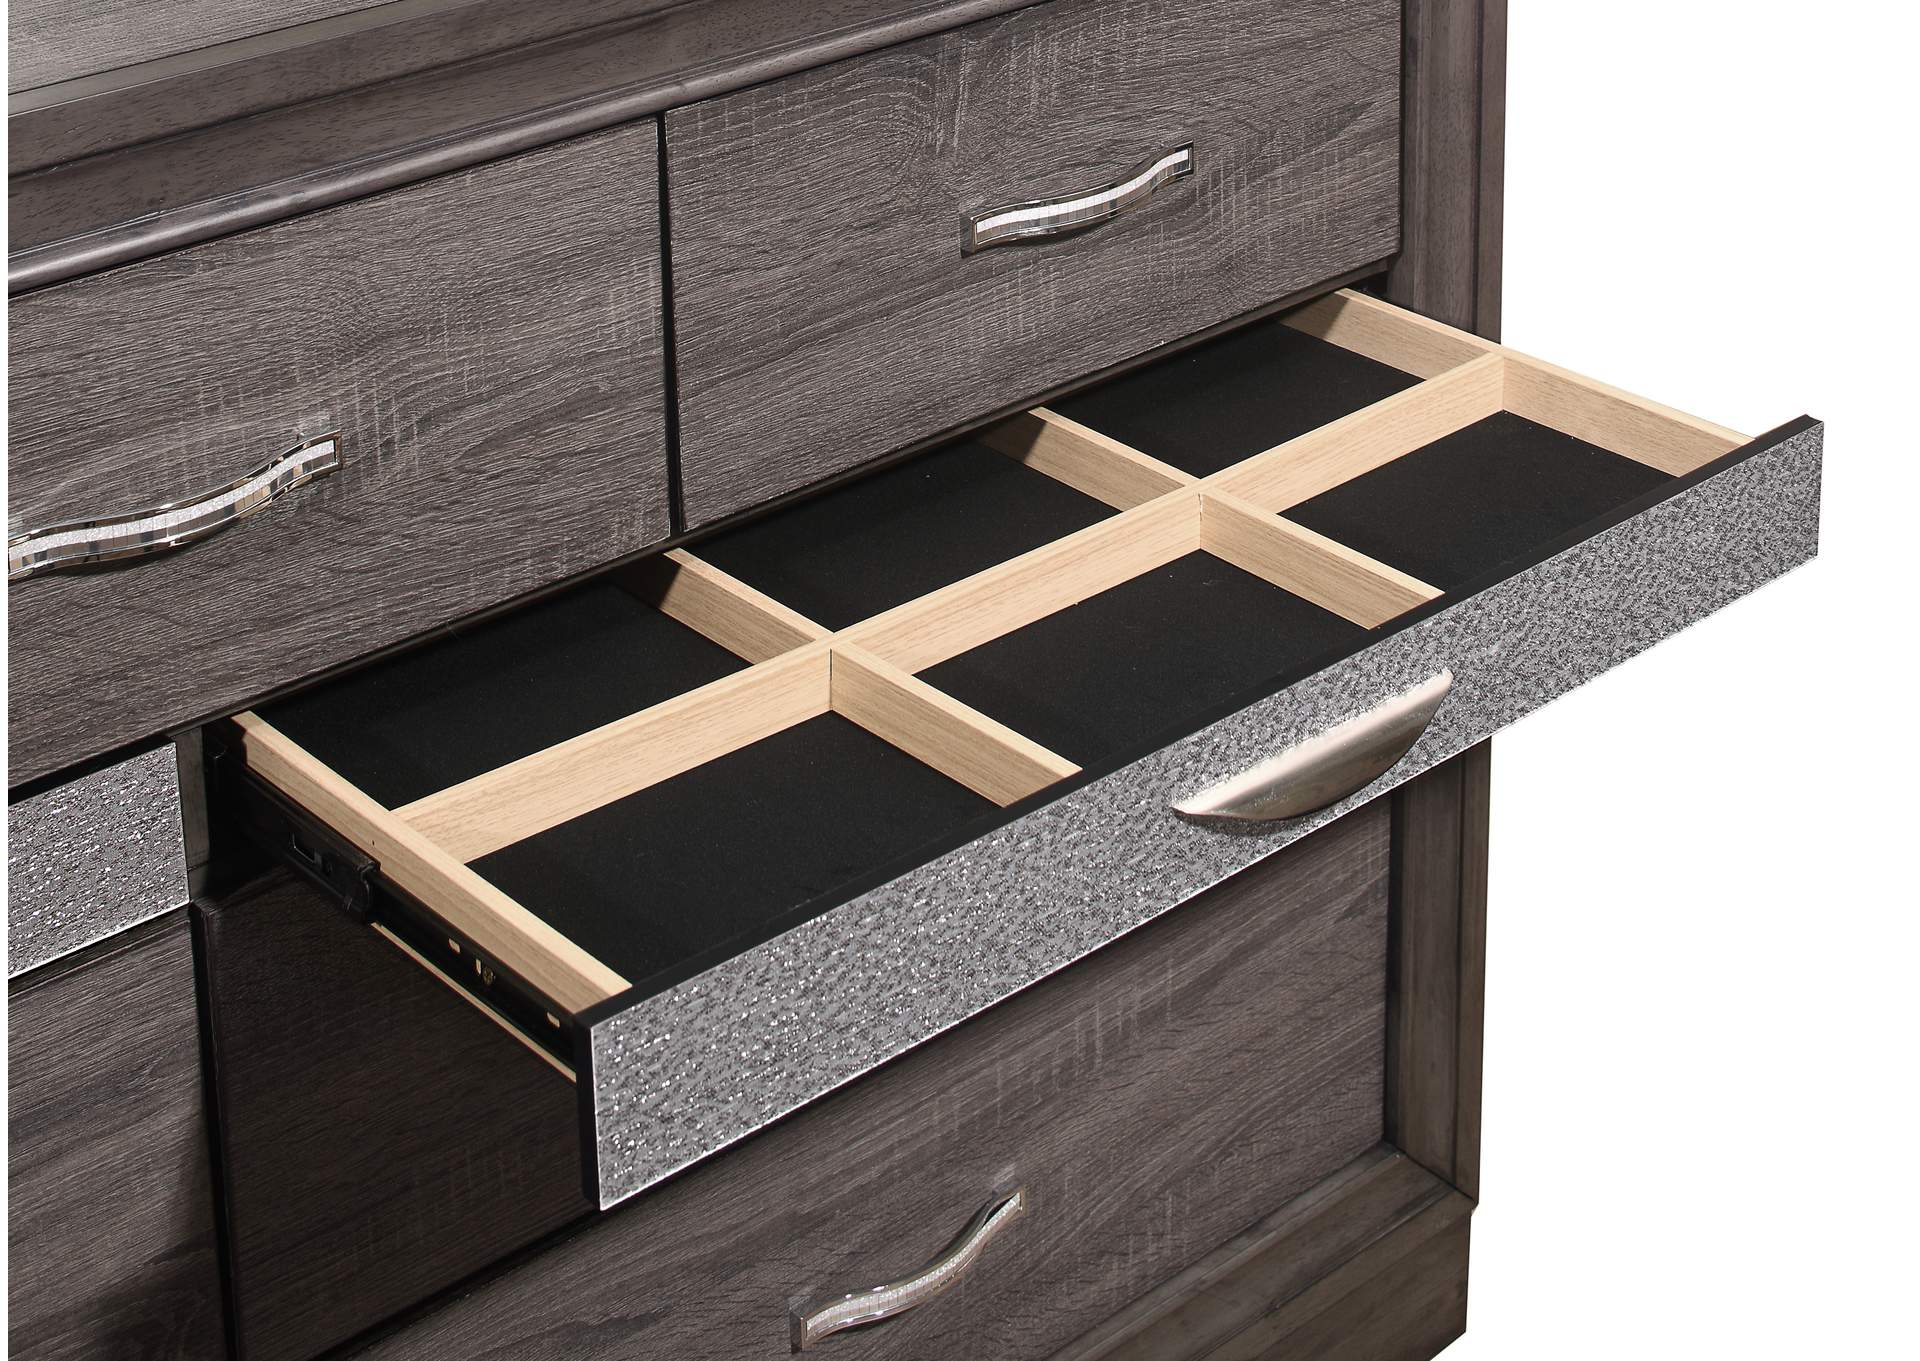 Grey Seville Dresser,Global Furniture USA